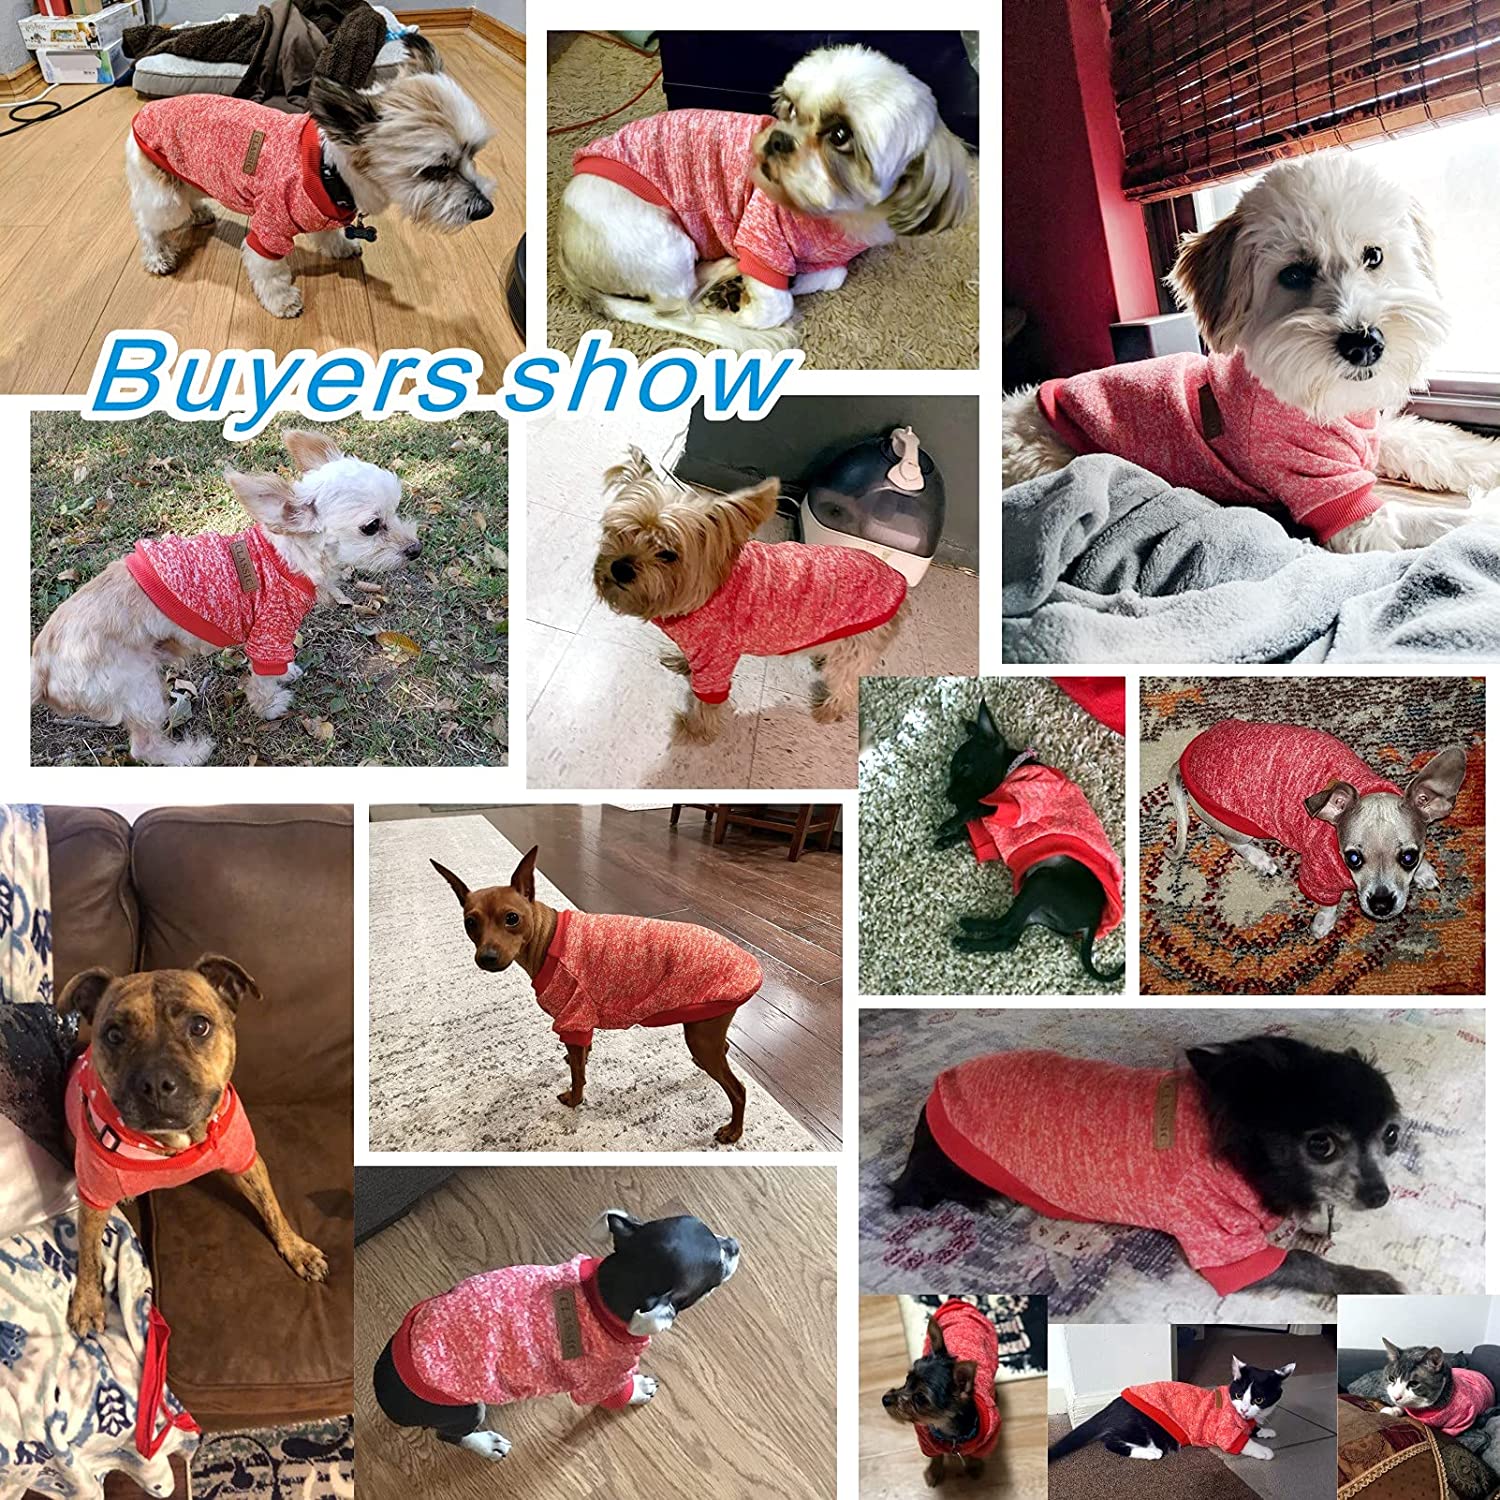 KUTKUT Small Dog & Cat Classic Warm Clothes Knitwear Dog Sweater Soft Thickening Warm Pup Dogs Shirt Winter Puppy Sweater for Small Dogs Shihtzu, Maltese, Yorkii etc - kutkutstyle